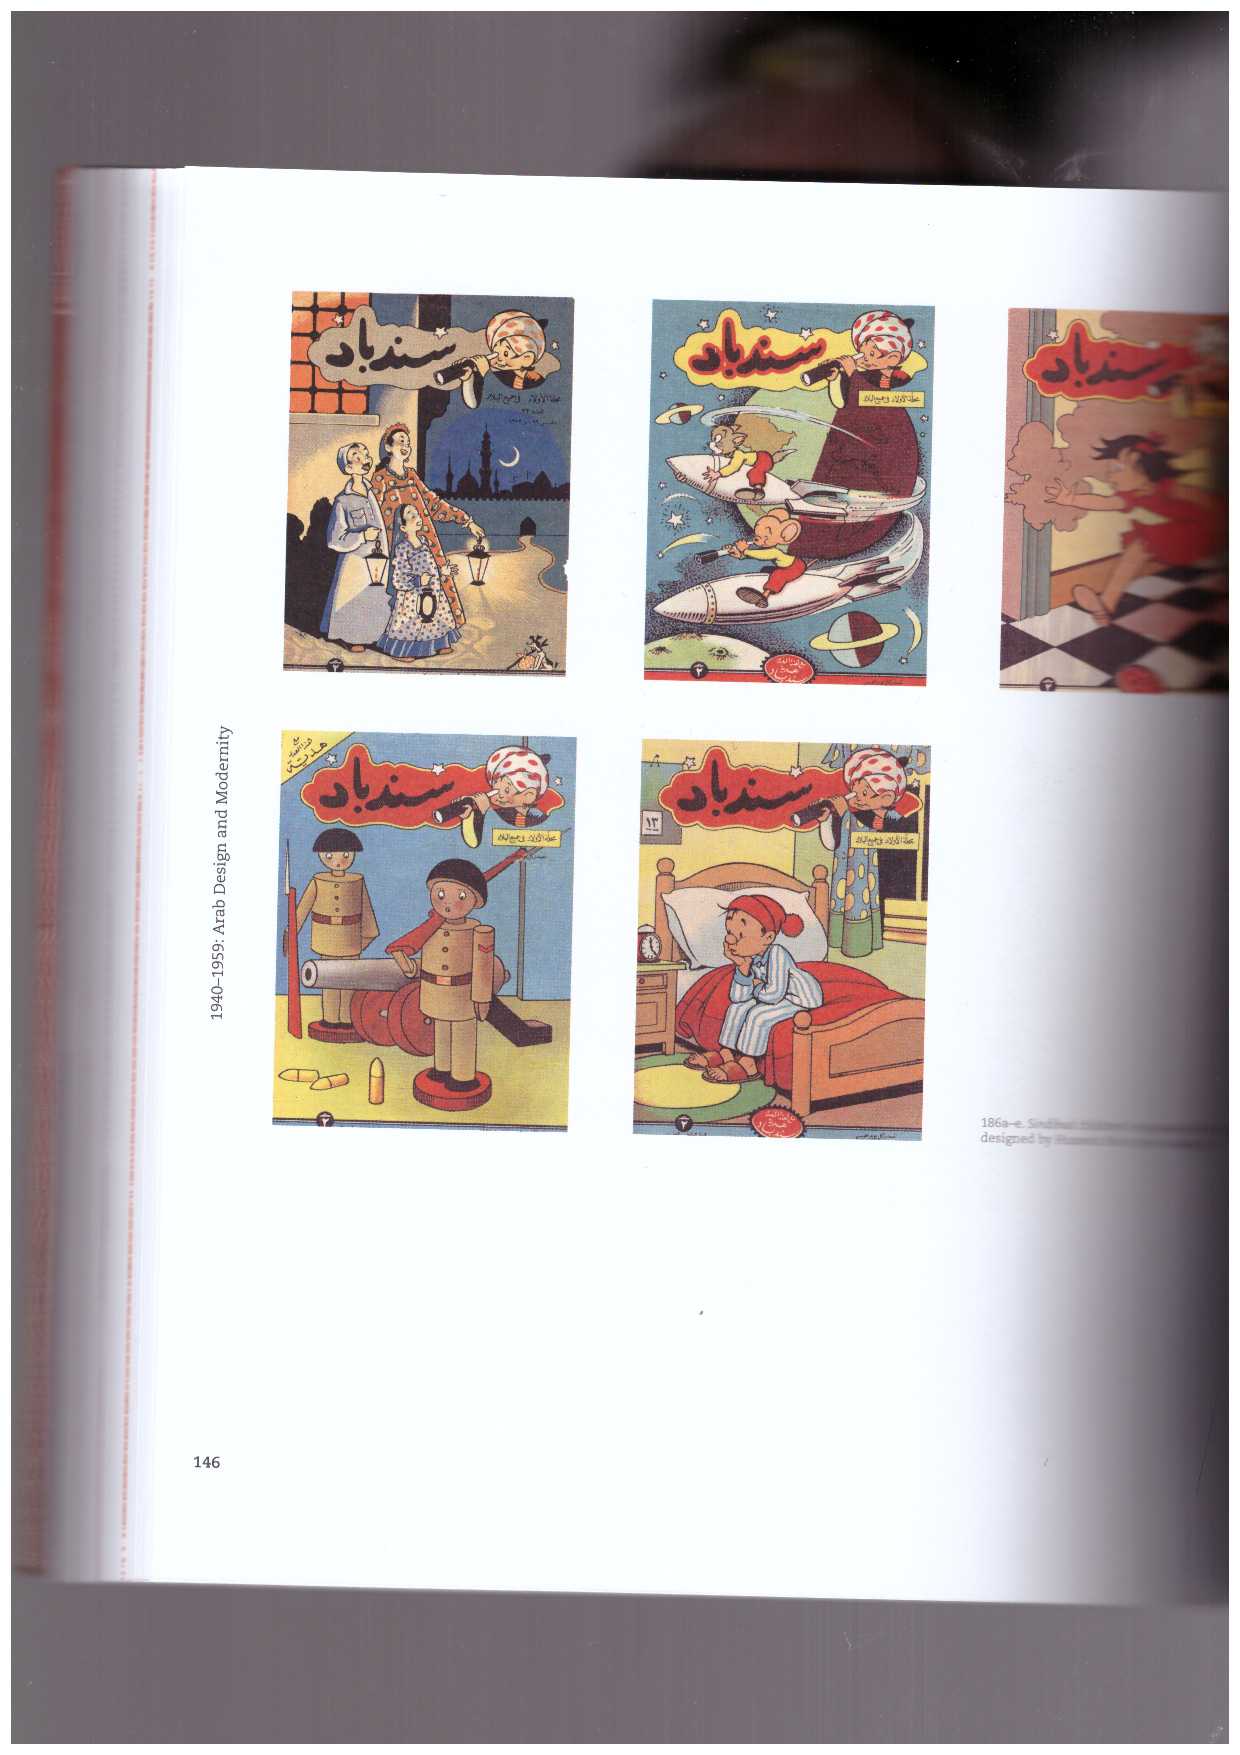 SHEHAB, Bahia; NAWAR, Haytham - A History of Arab Graphic Design